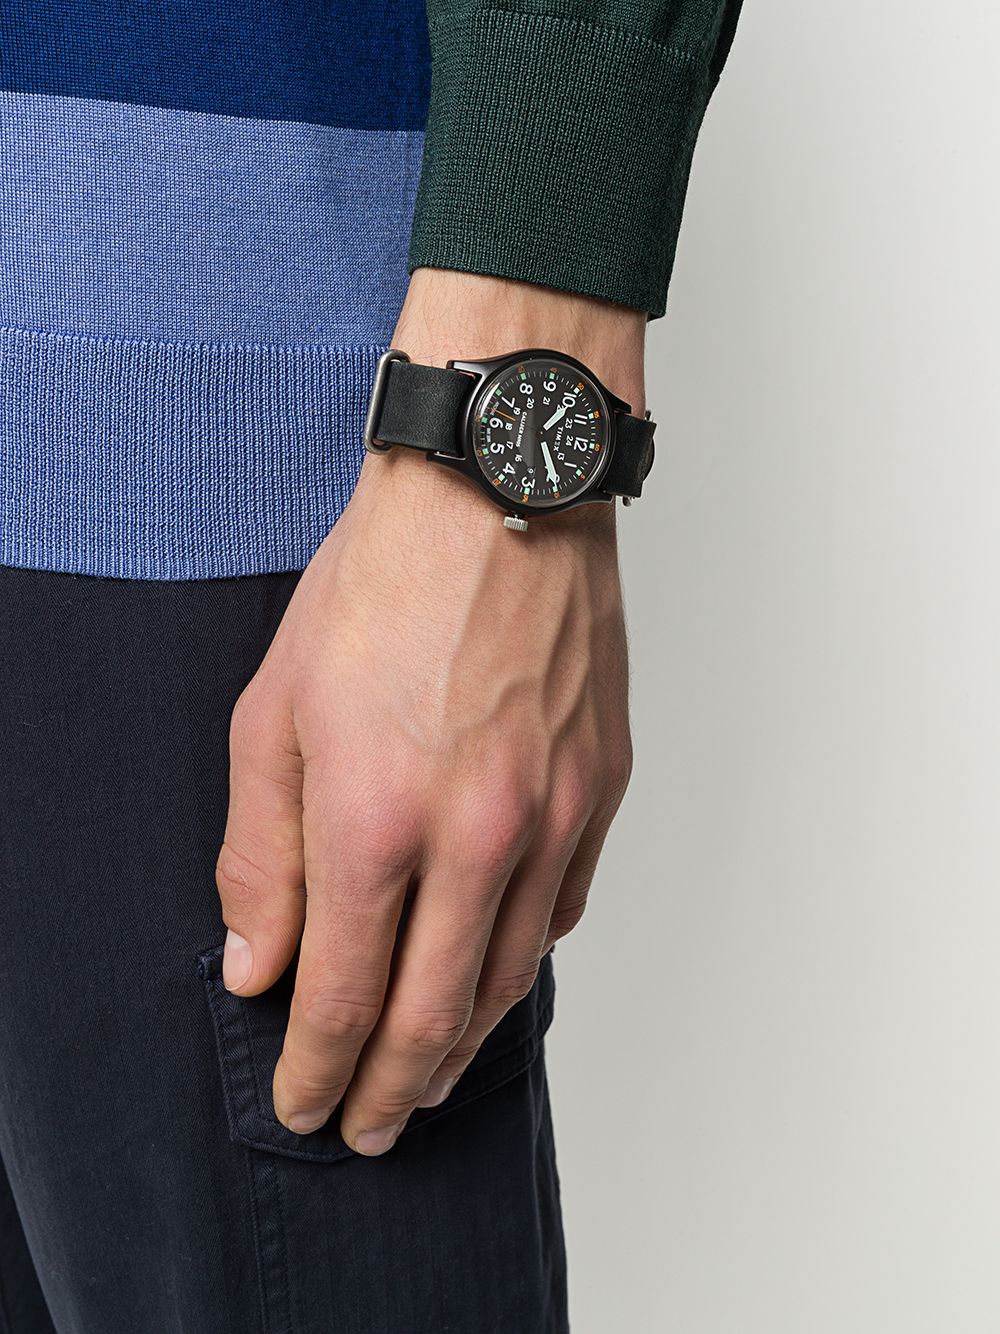 фото Timex наручные часы navi world time с фактурным ремешком